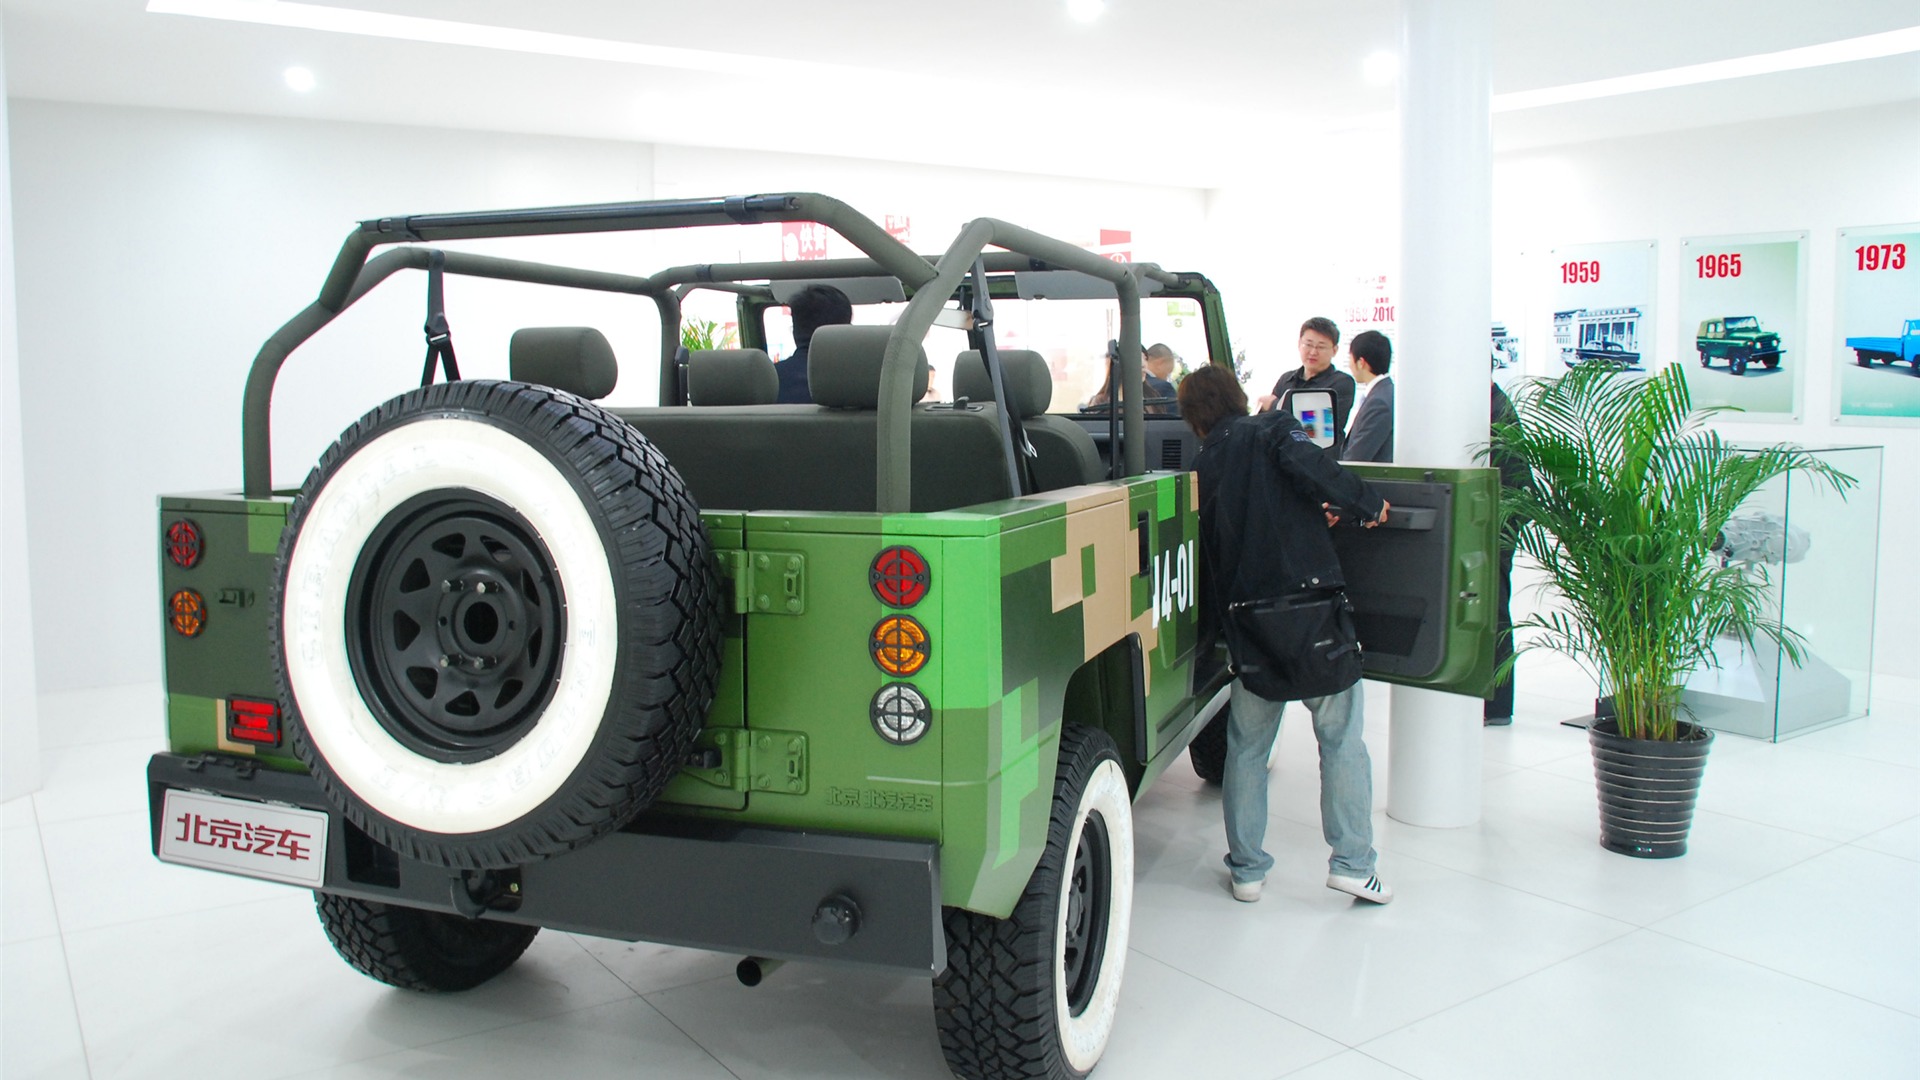 2010北京国际车展(一) (z321x123作品)12 - 1920x1080